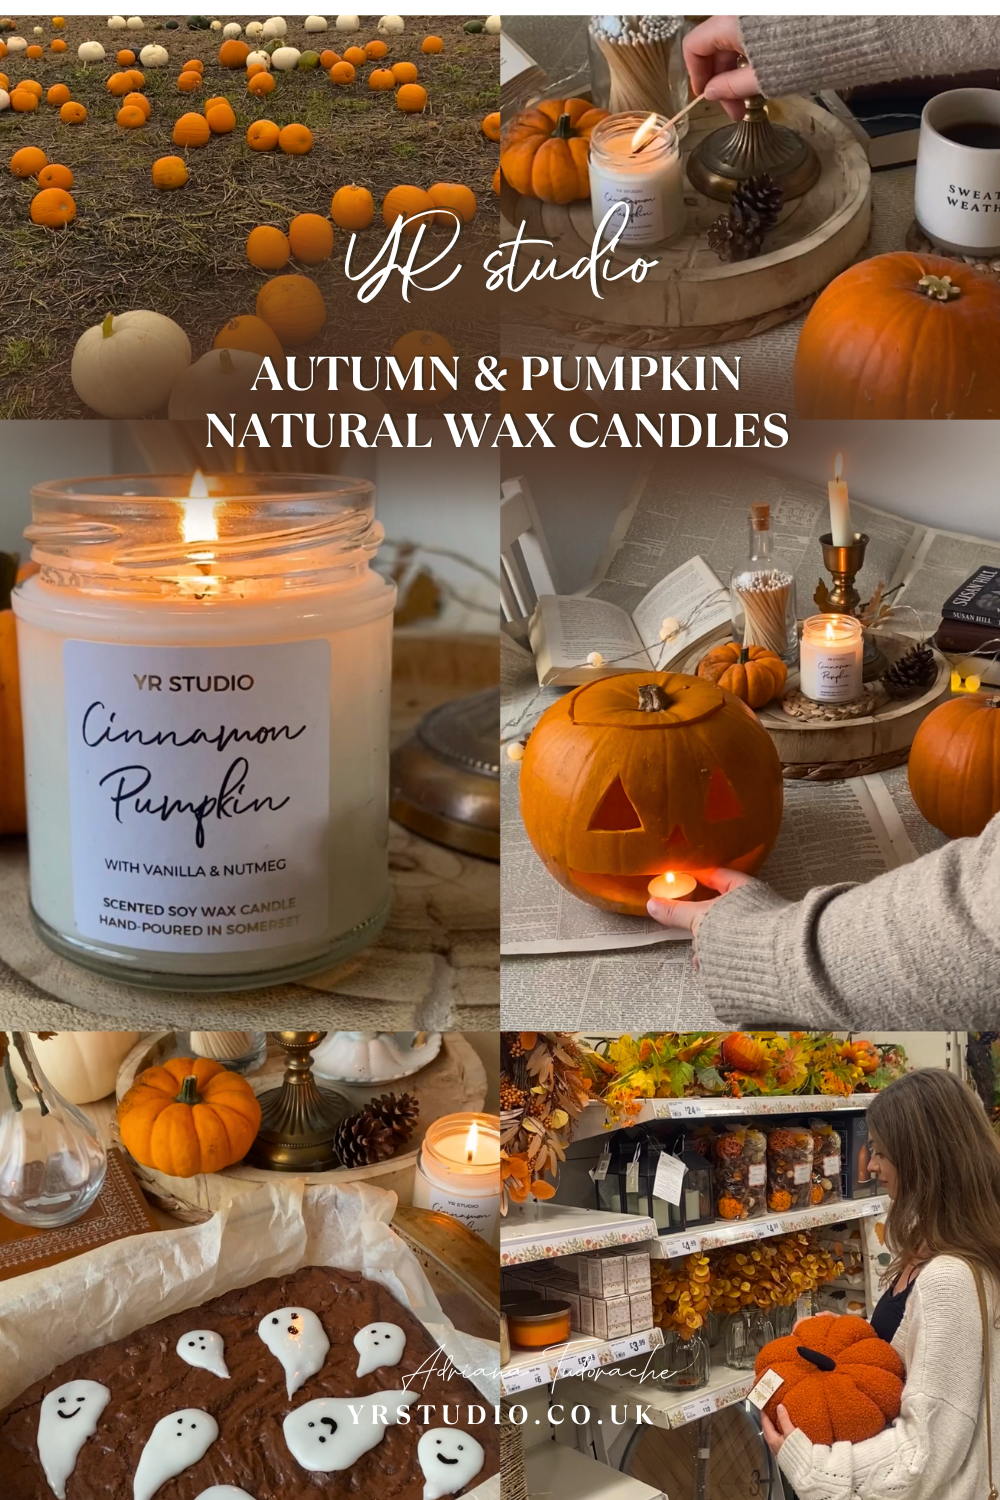 YR studio autumn pumpkin candles